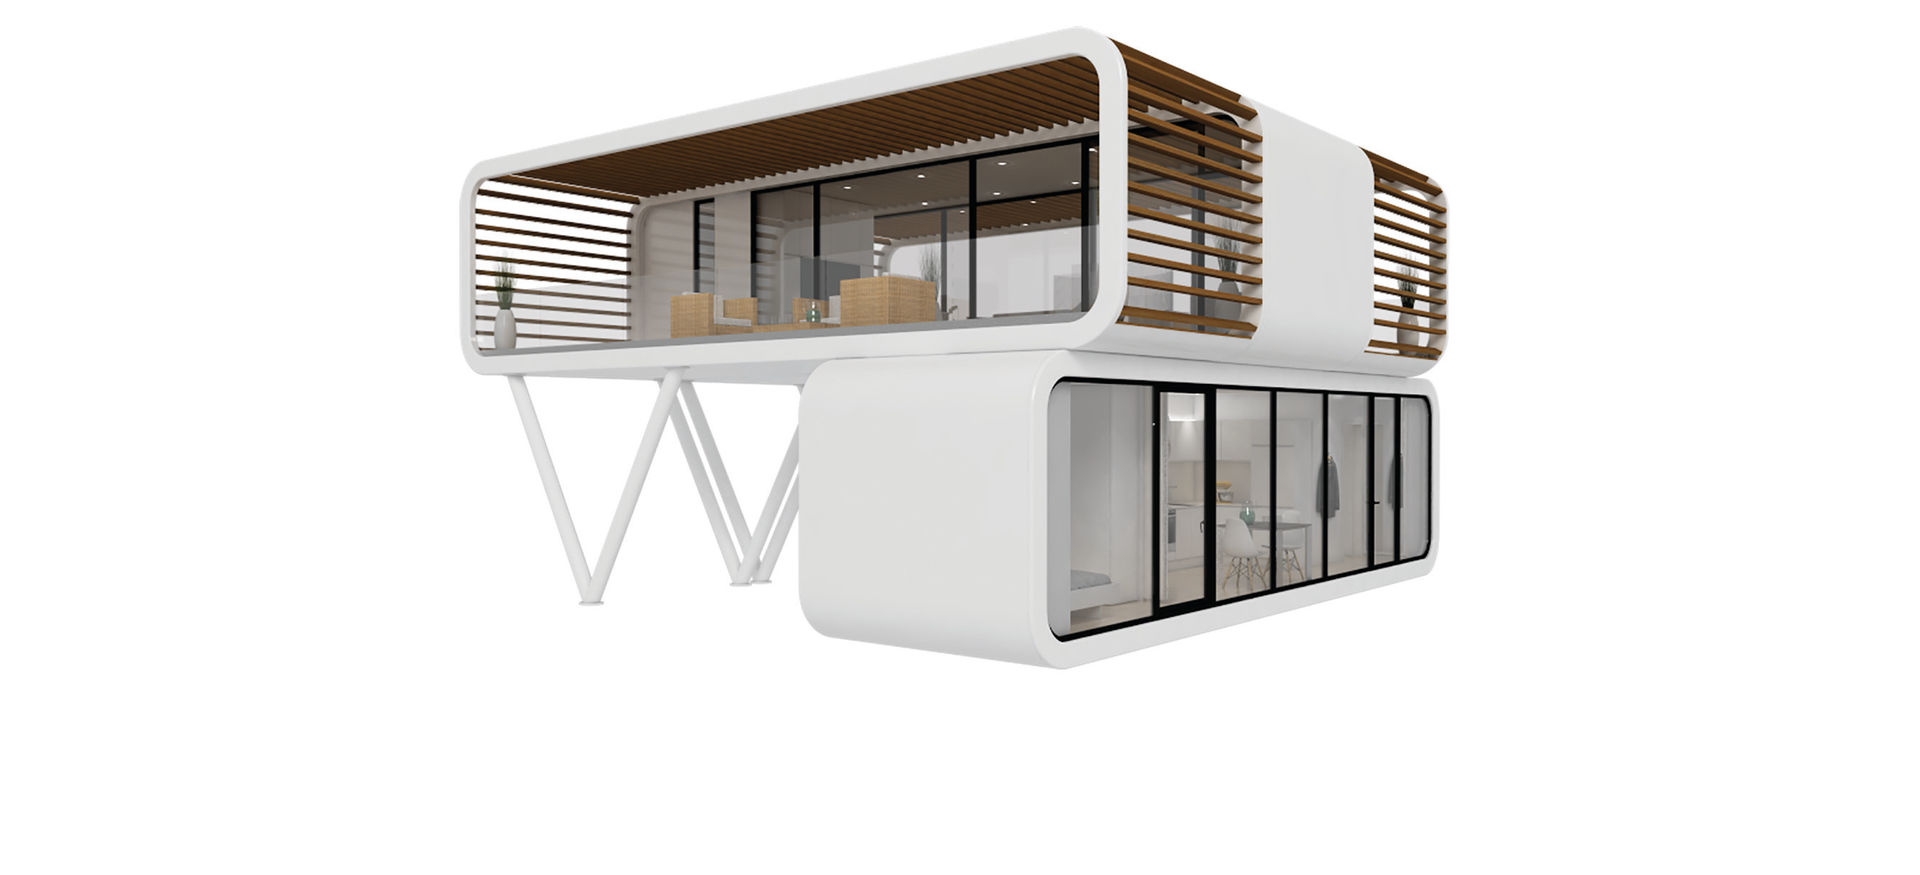 Flexibel wohnen im modularen Tiny House coodo, LTG Lofts to go - coodo LTG Lofts to go - coodo Eclectic style houses